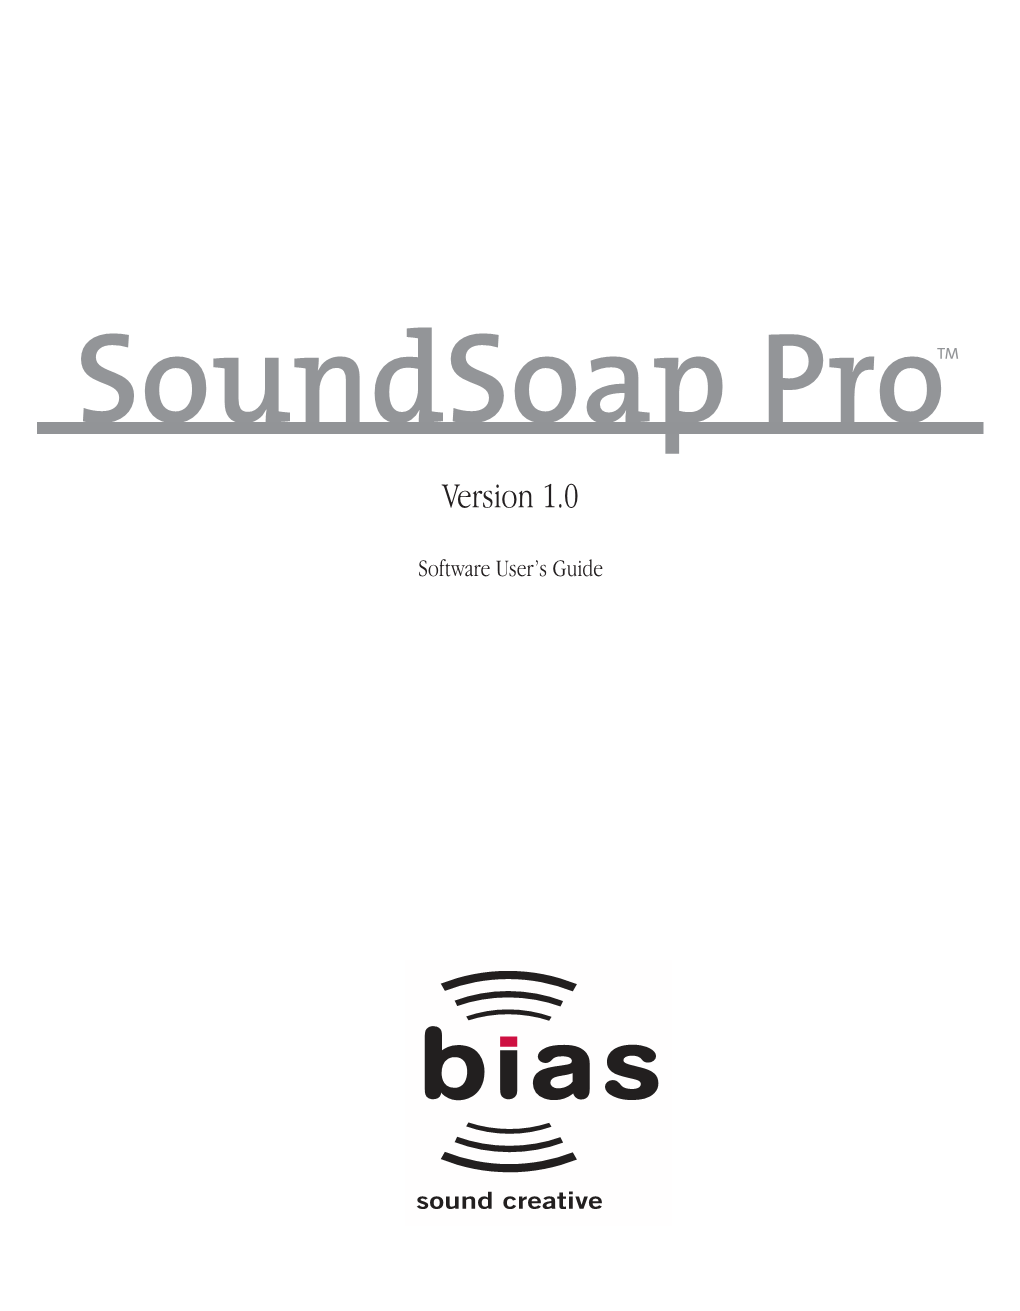 Soundsoap Protm Version 1.0